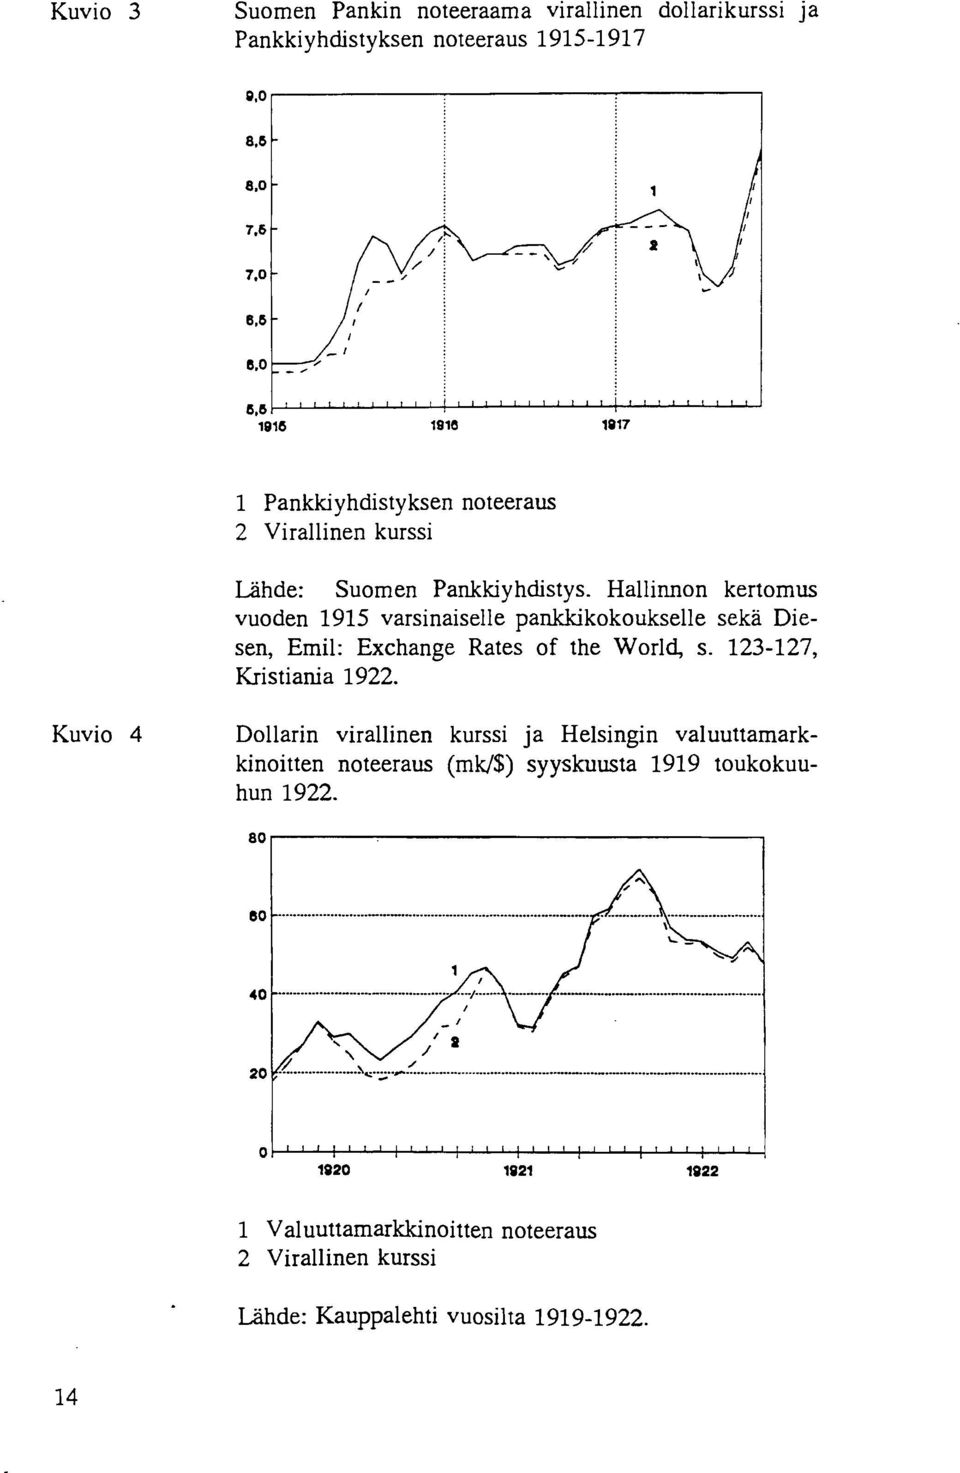 Hallinnon kertomus vuoden 1915 varsinaiselle pankkikokoukselle seka Diesen, Emil: Exchange Rates of the World, s. 123-127, Kristiania 1922.